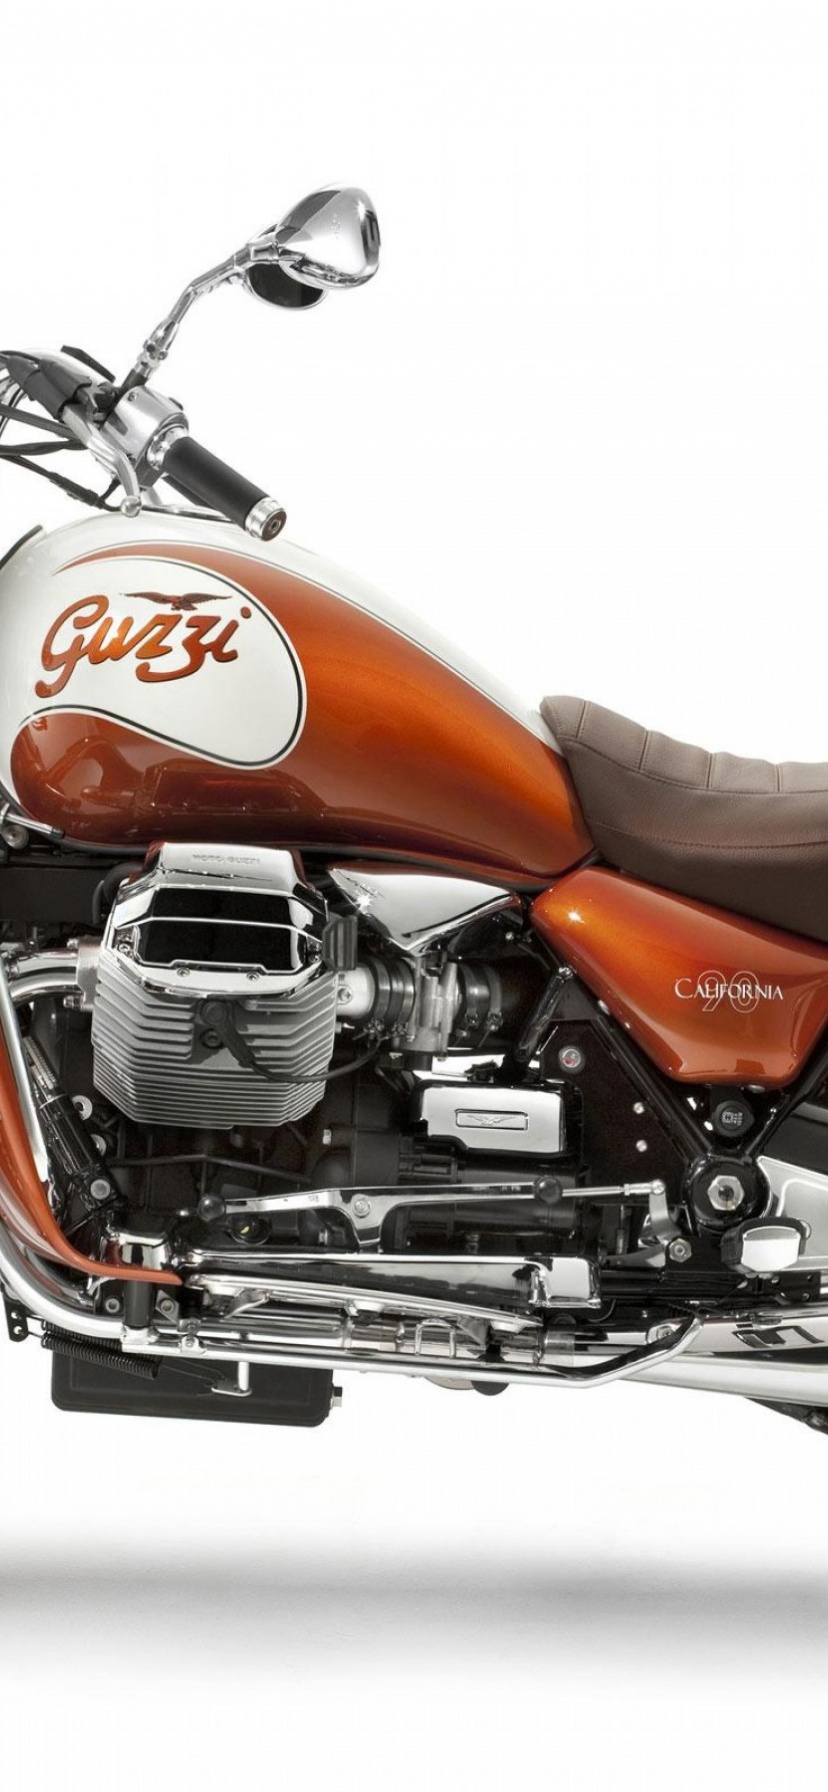 Moto Guzzi Motorcycle 2012